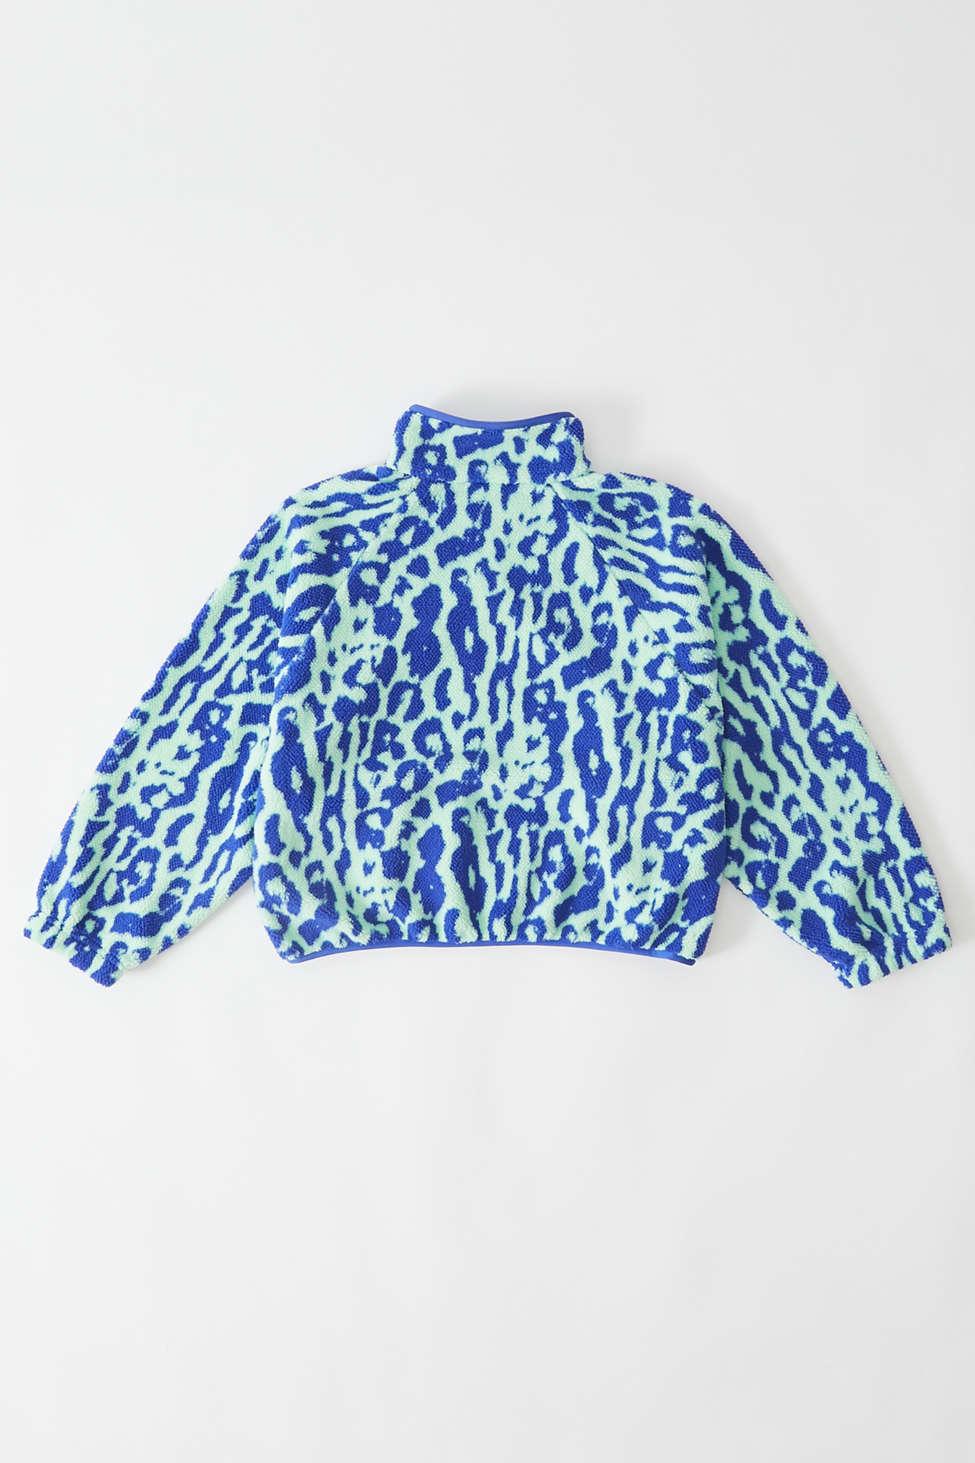 Nike Sportswear Animal Print Sherpa Jacket in Blue | Lyst Canada